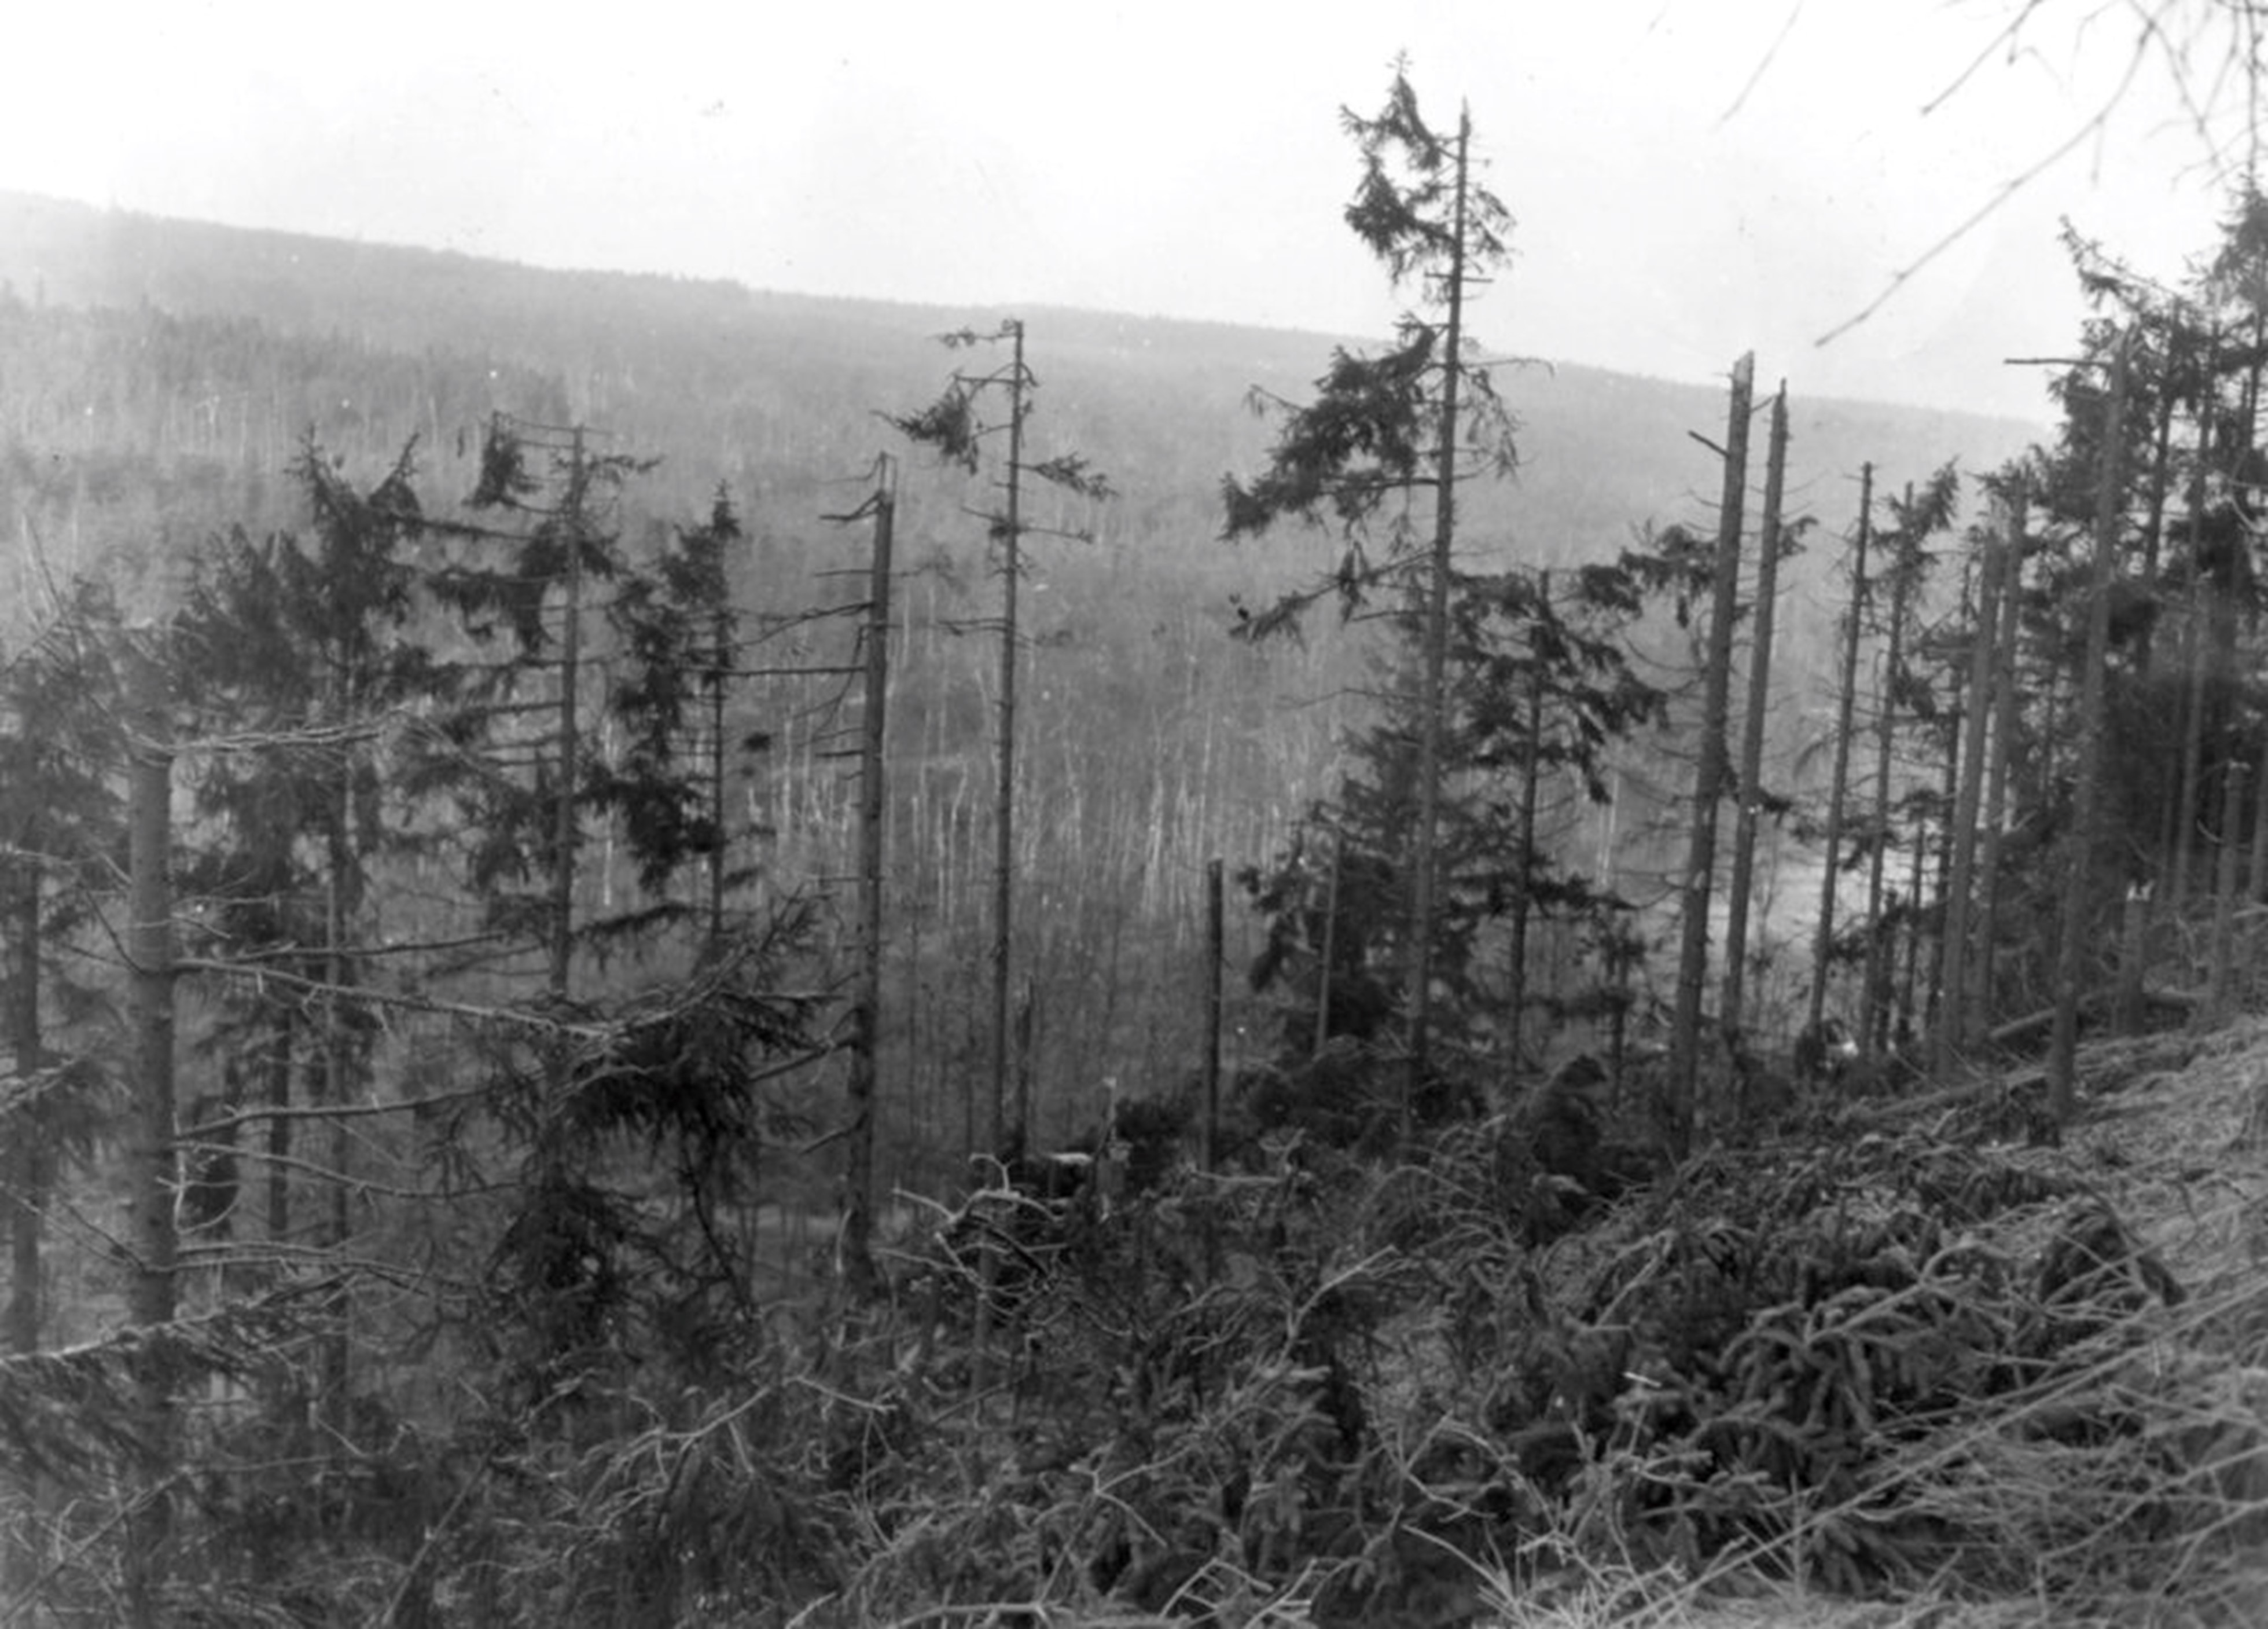 Imaginea unui câmp minat din Pădurea Hürtgen în timpul celui de-al Doilea Război Mondial arată vegetația densă și terenul accidentat unde Edwards și alți soldați americani s-au confruntat cu explozibili germanilor